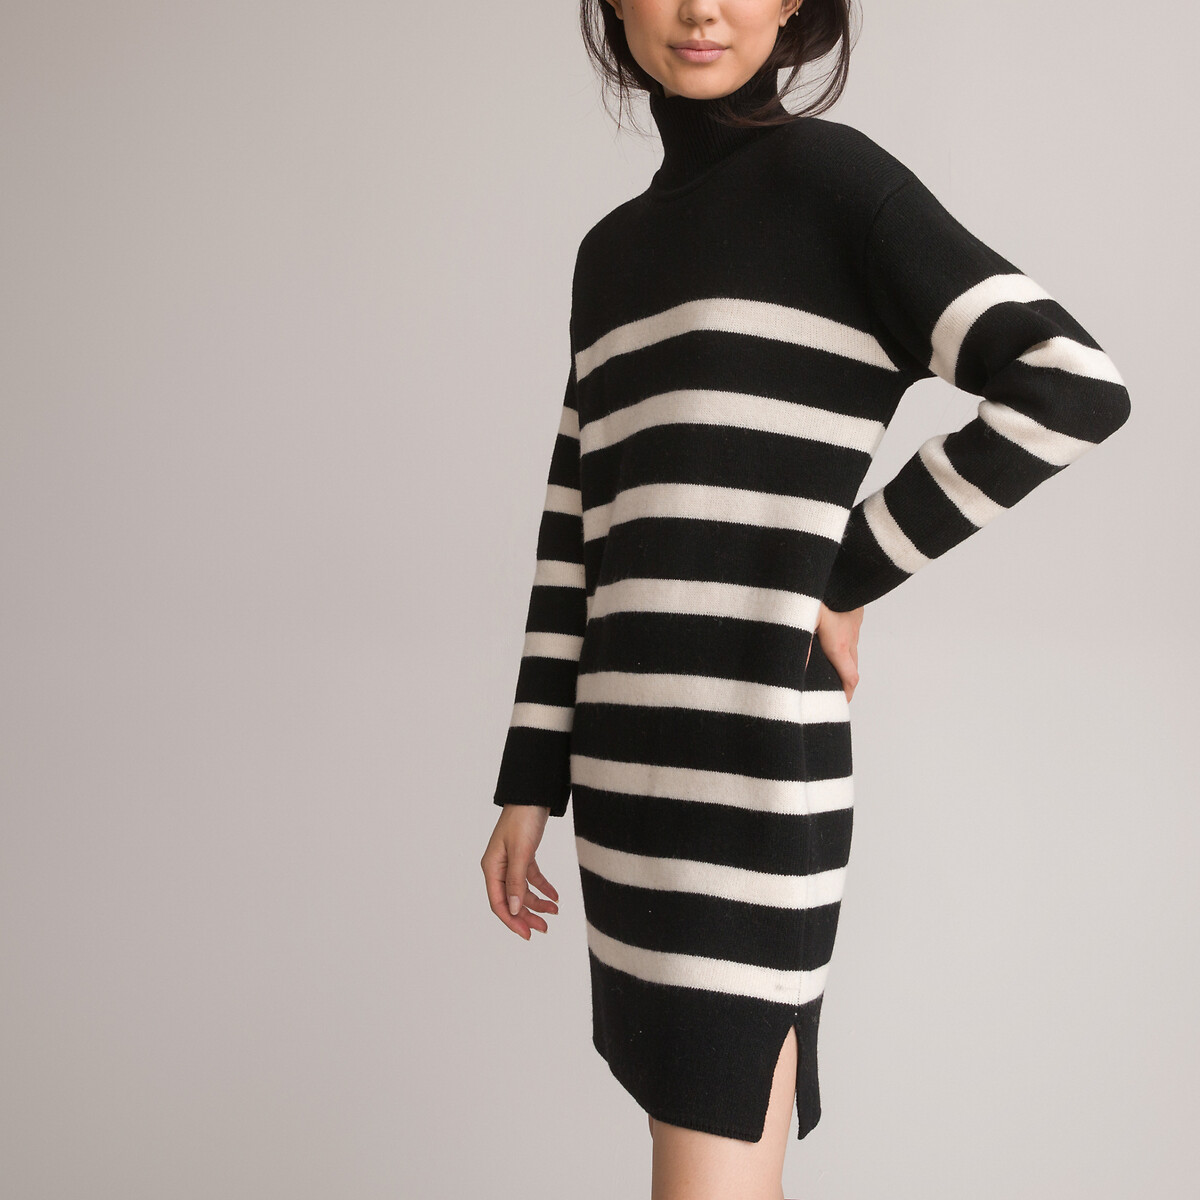 платье-пуловер короткое в полоску длинные рукава xxl черный